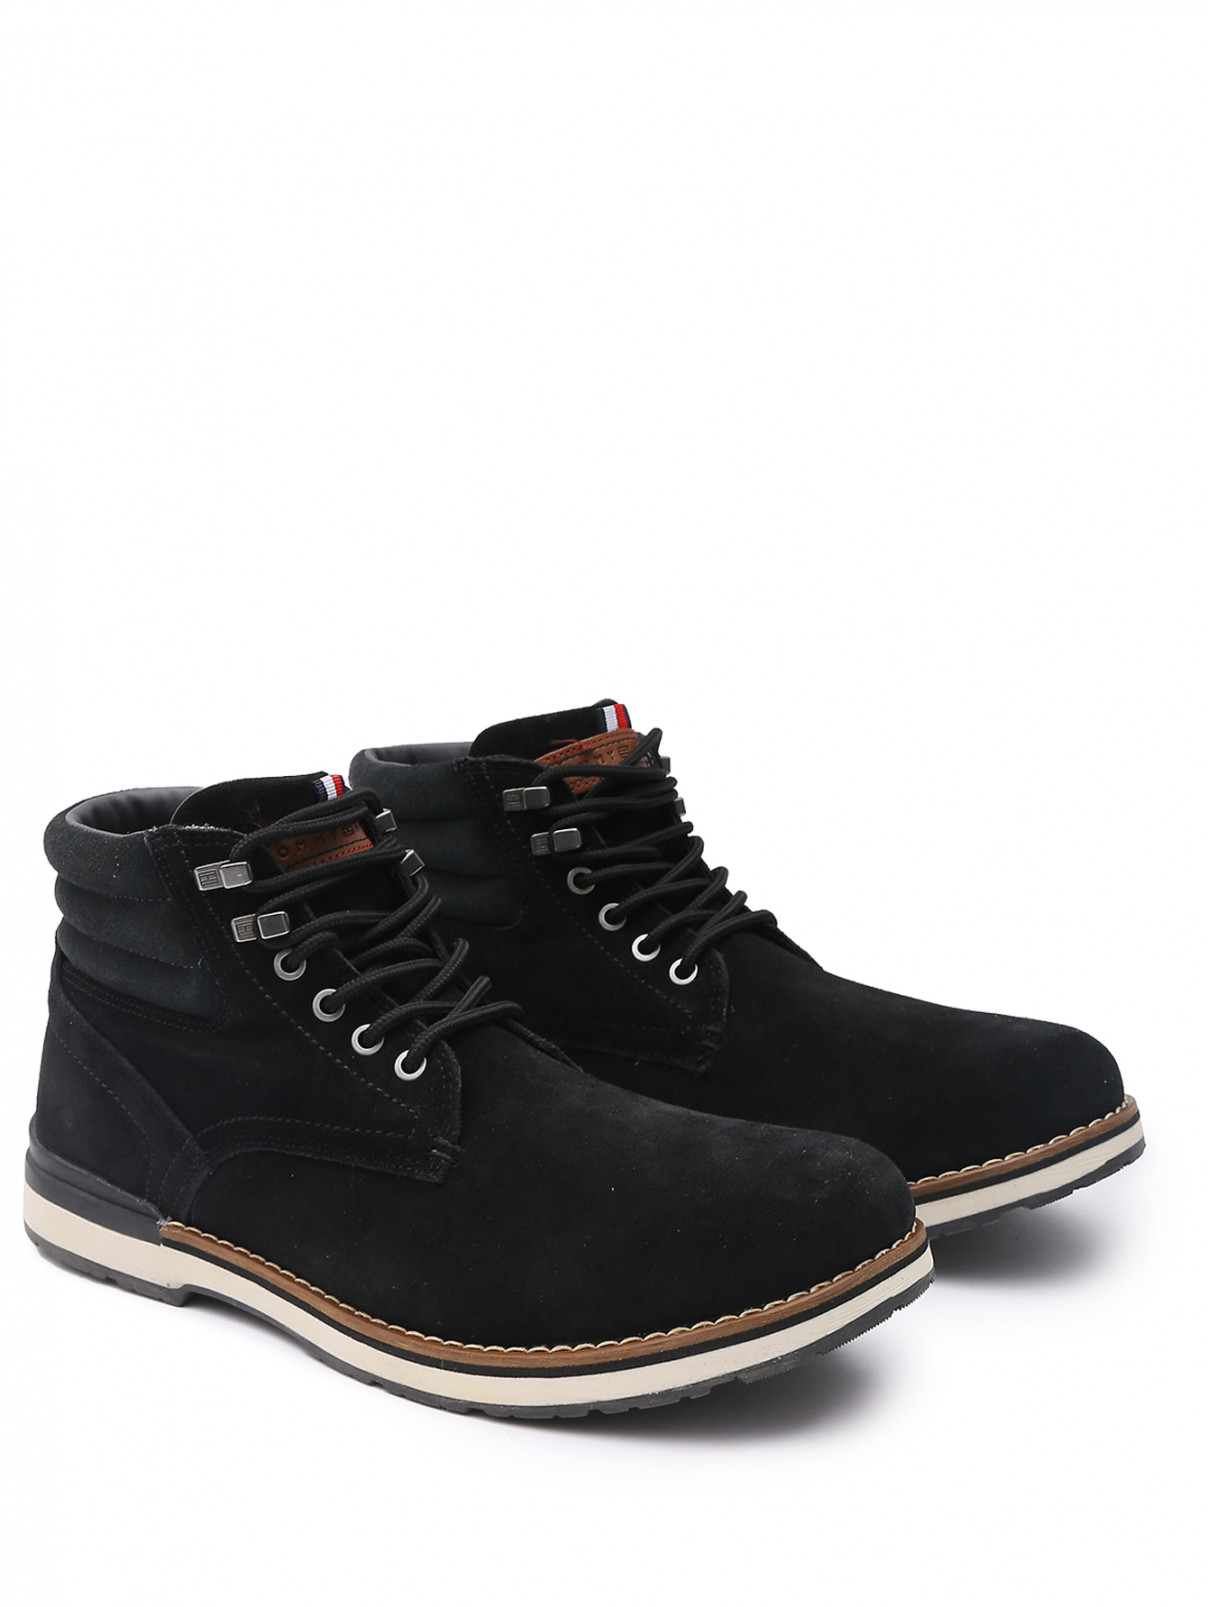 Утепленные ботинки из замши на шнурках Tommy Hilfiger  –  Общий вид  – Цвет:  Черный